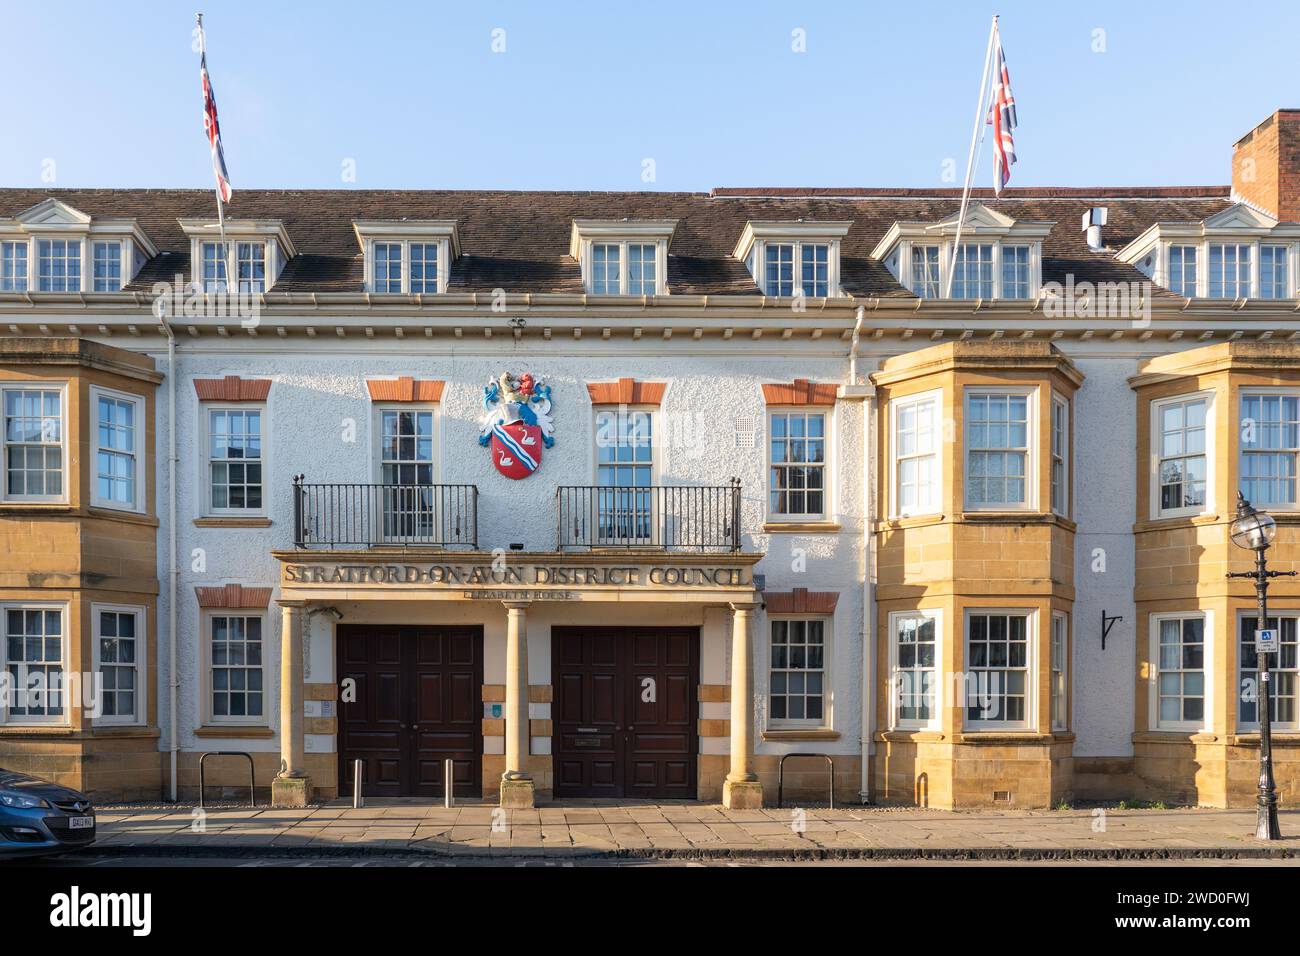 Stratford upon Avon District council Building - Elizabeth House on Church Street - un bâtiment en pierre de couleur miel avec des drapeaux britanniques accrochés au-dessus. ROYAUME-UNI Banque D'Images